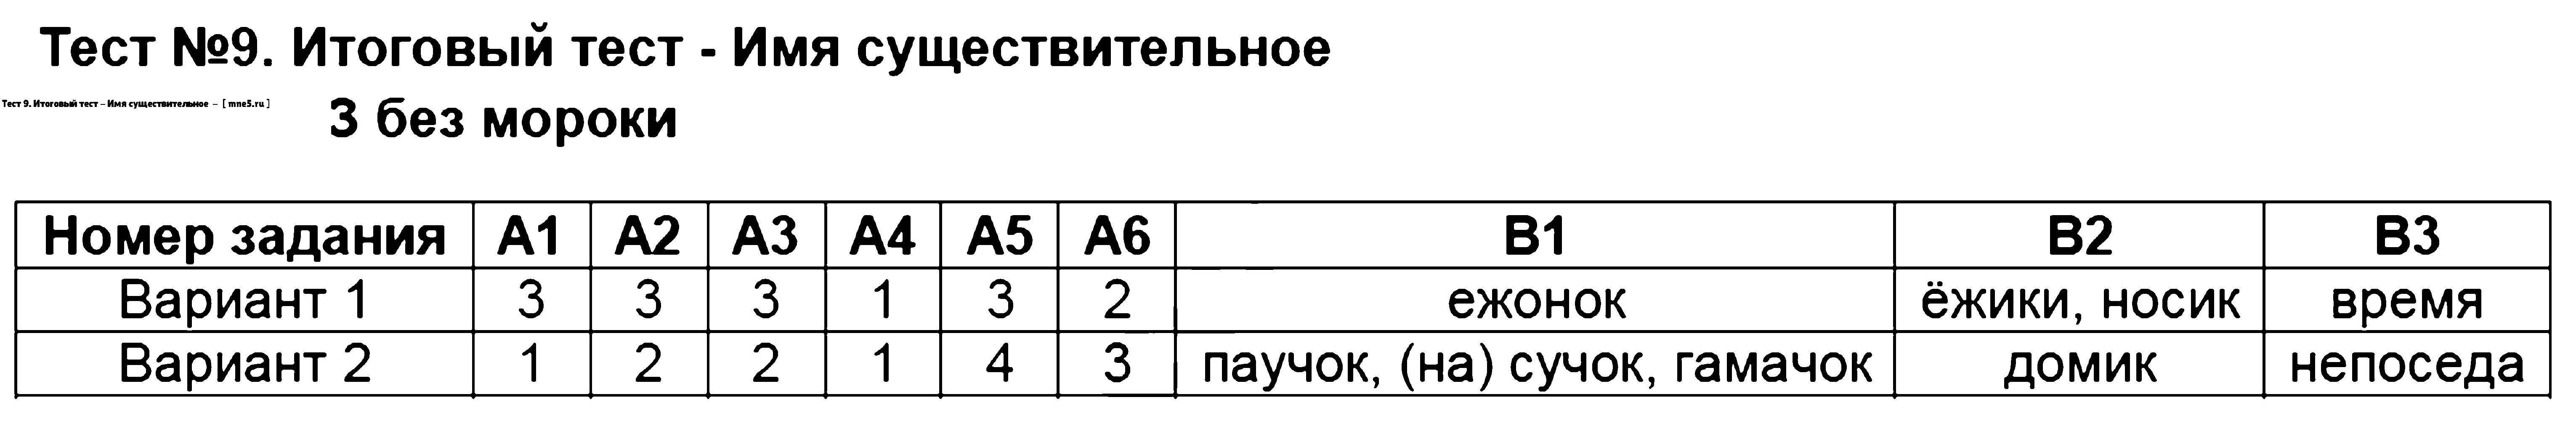 ГДЗ Русский язык 6 класс - Тест 9. Итоговый тест - Имя существительное